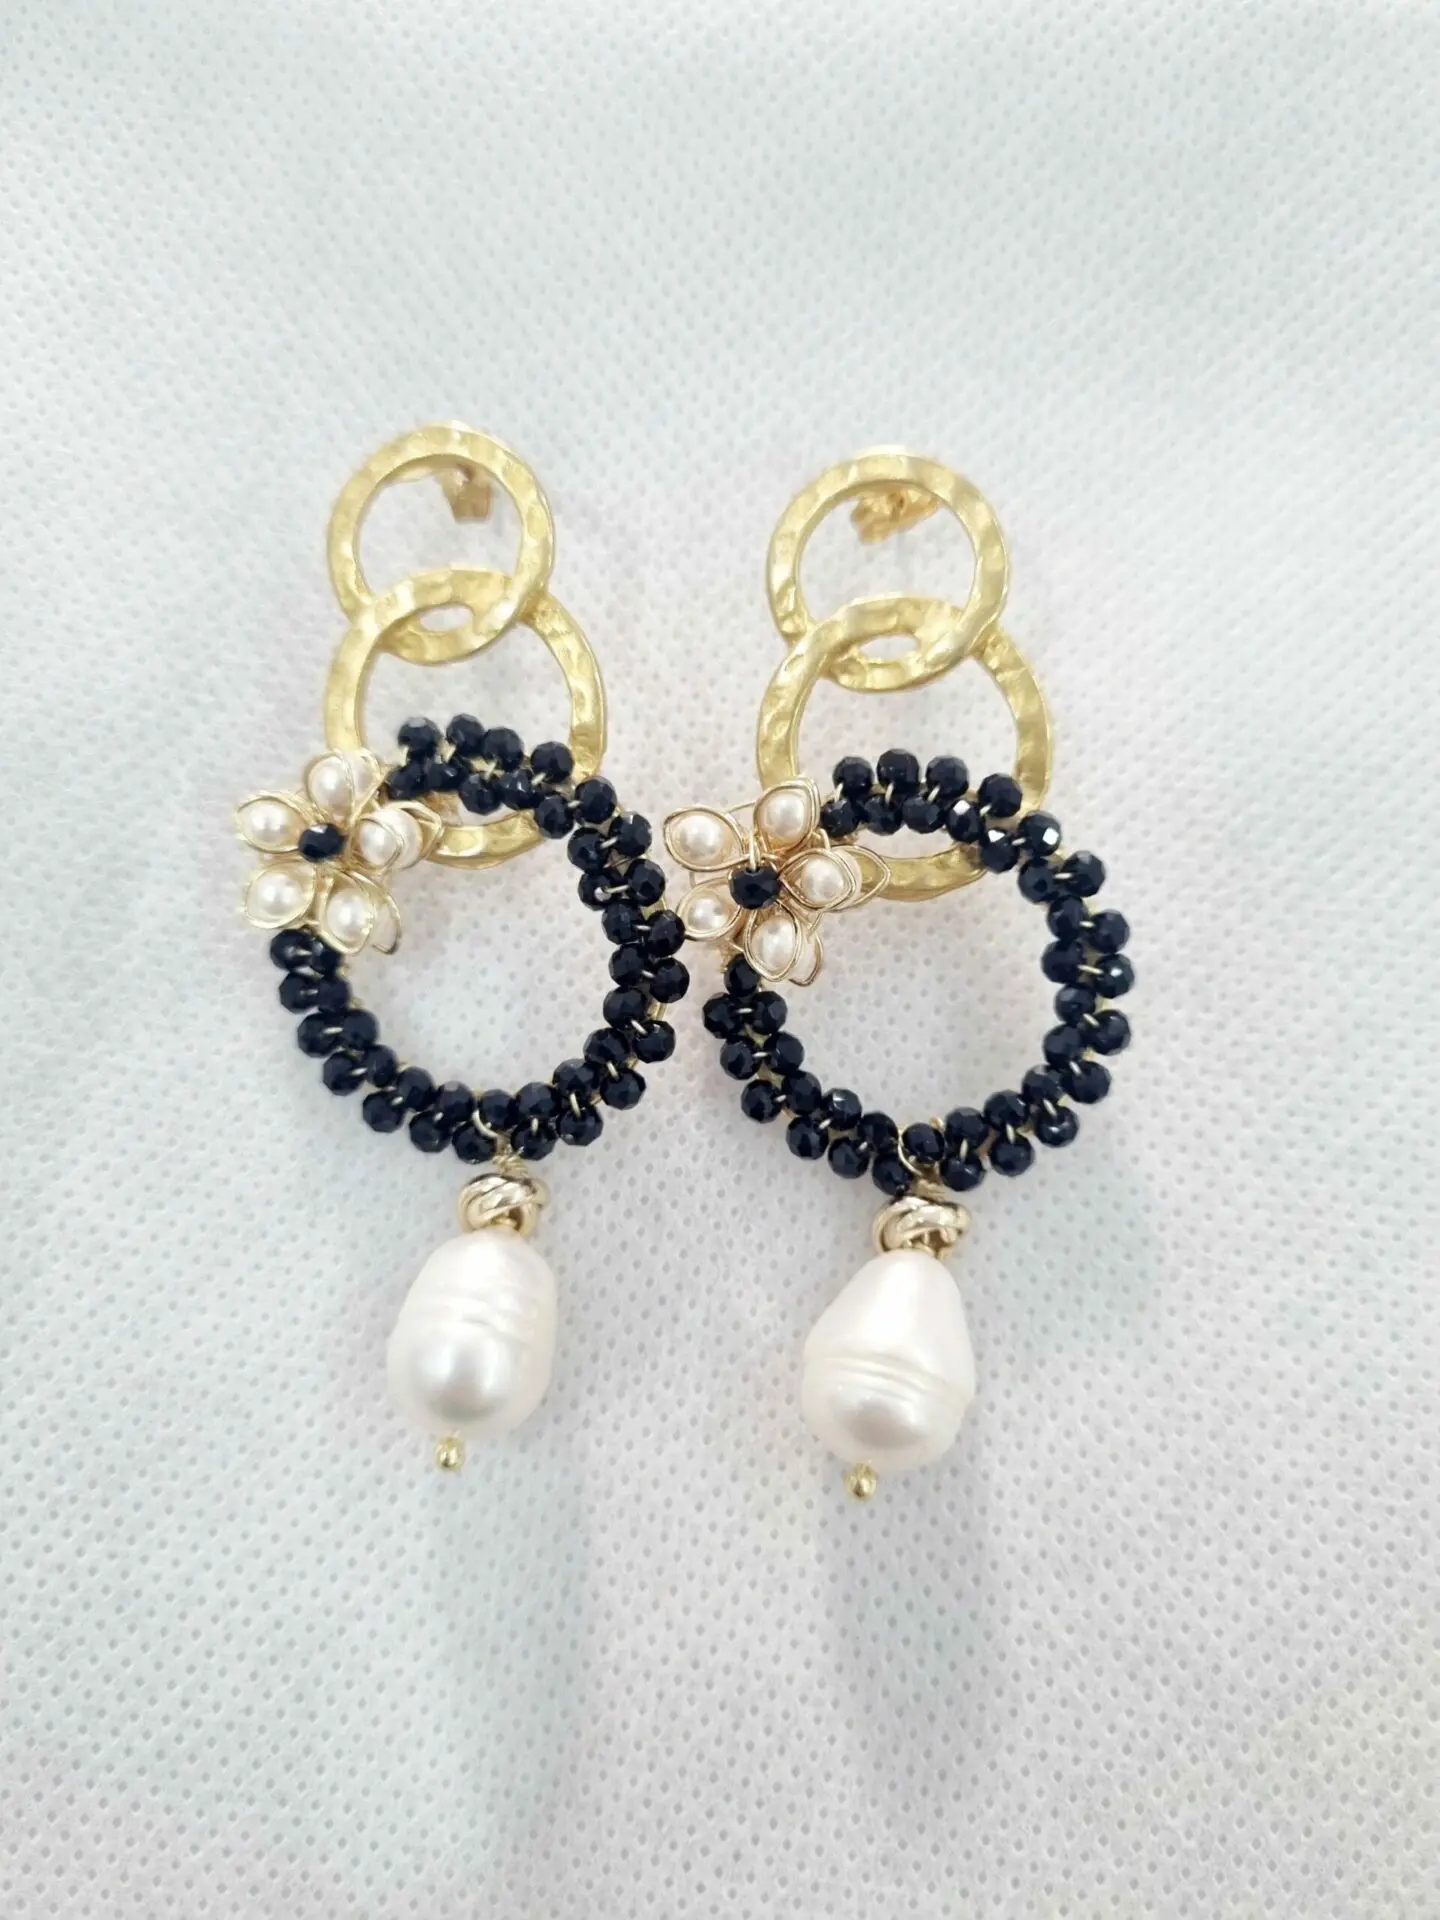 Boucles d'oreilles fabriquées à la main avec du laiton, des cristaux, des perles baroques et des perles de Majorque Longueur 7 cm Poids 8,6 g.